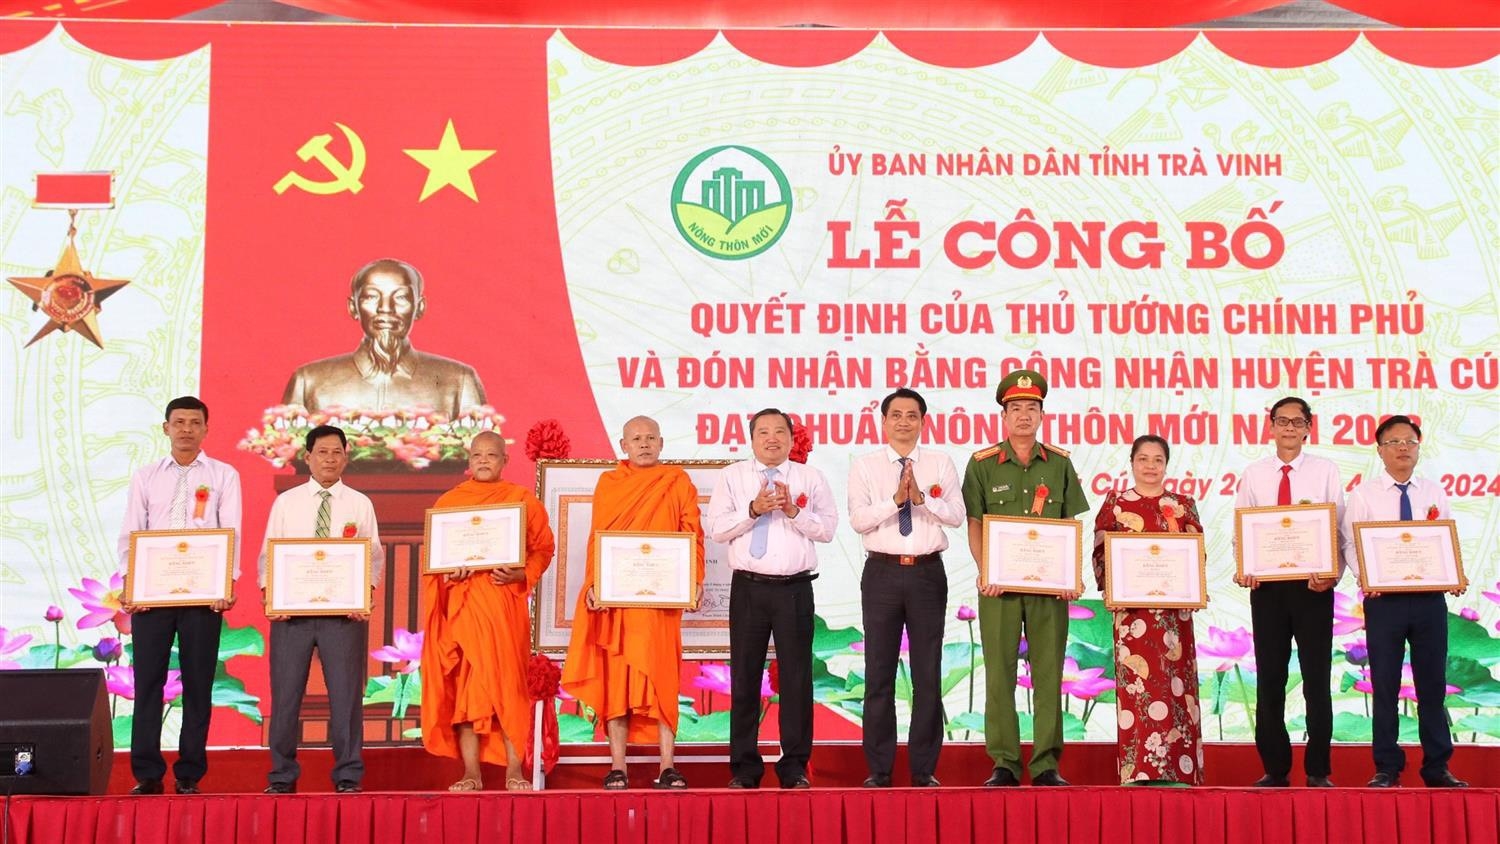 Đại diện lãnh đạo huyện Trà Cú, tỉnh Trà Vinh trao Bằng khen của Chủ tịch UBDND tỉnh cho các cá nhân